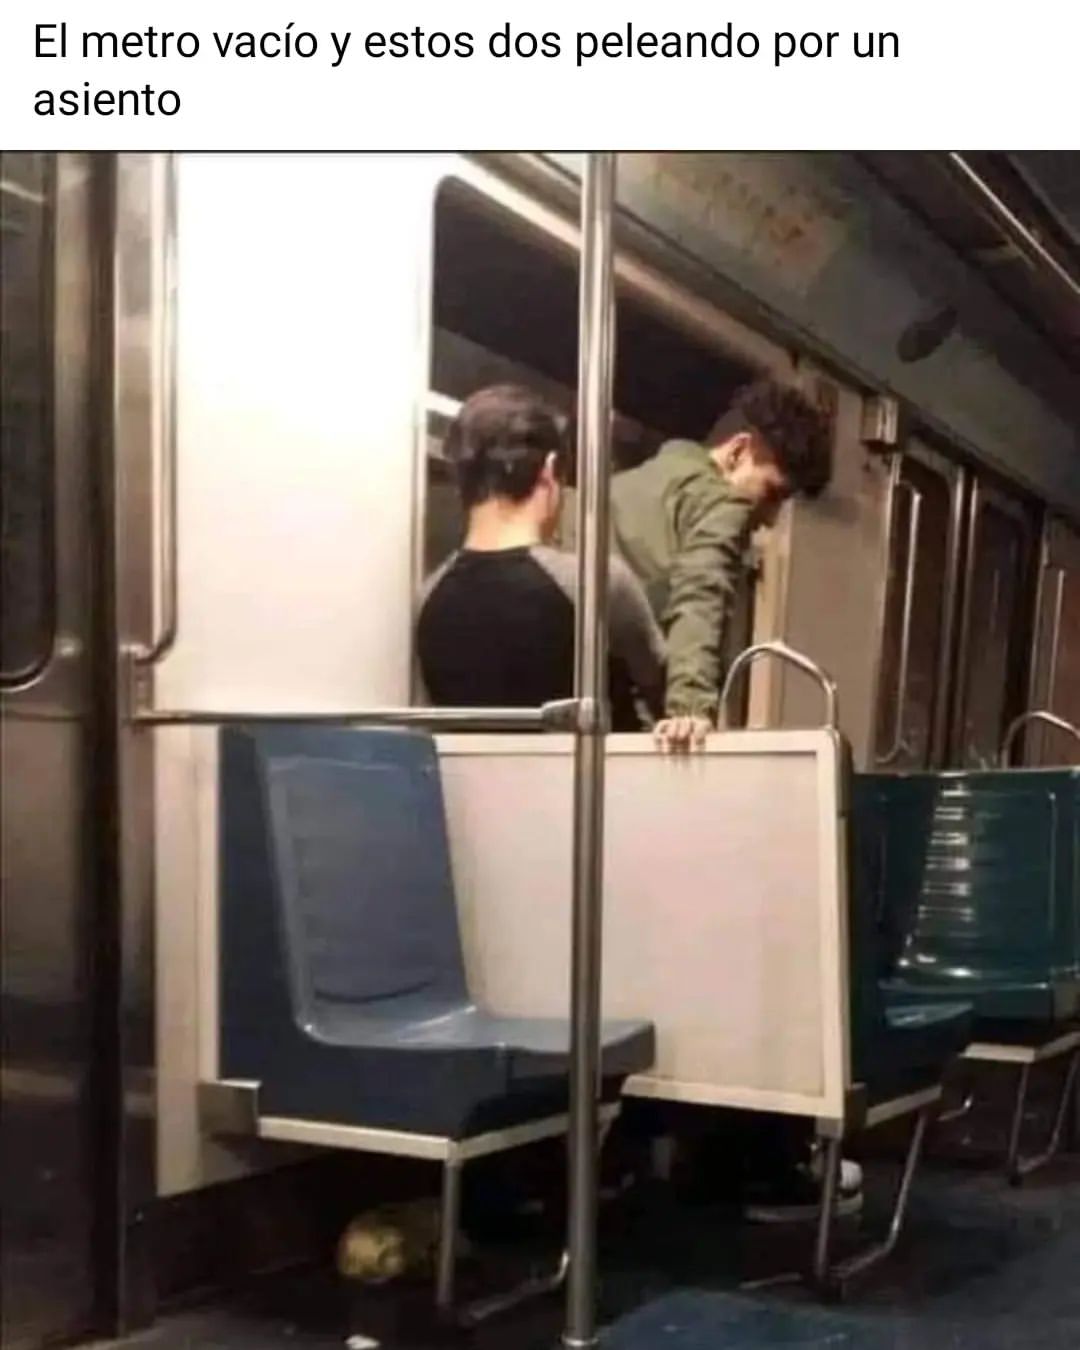 El metro vacío y estos dos peleando por un asiento.